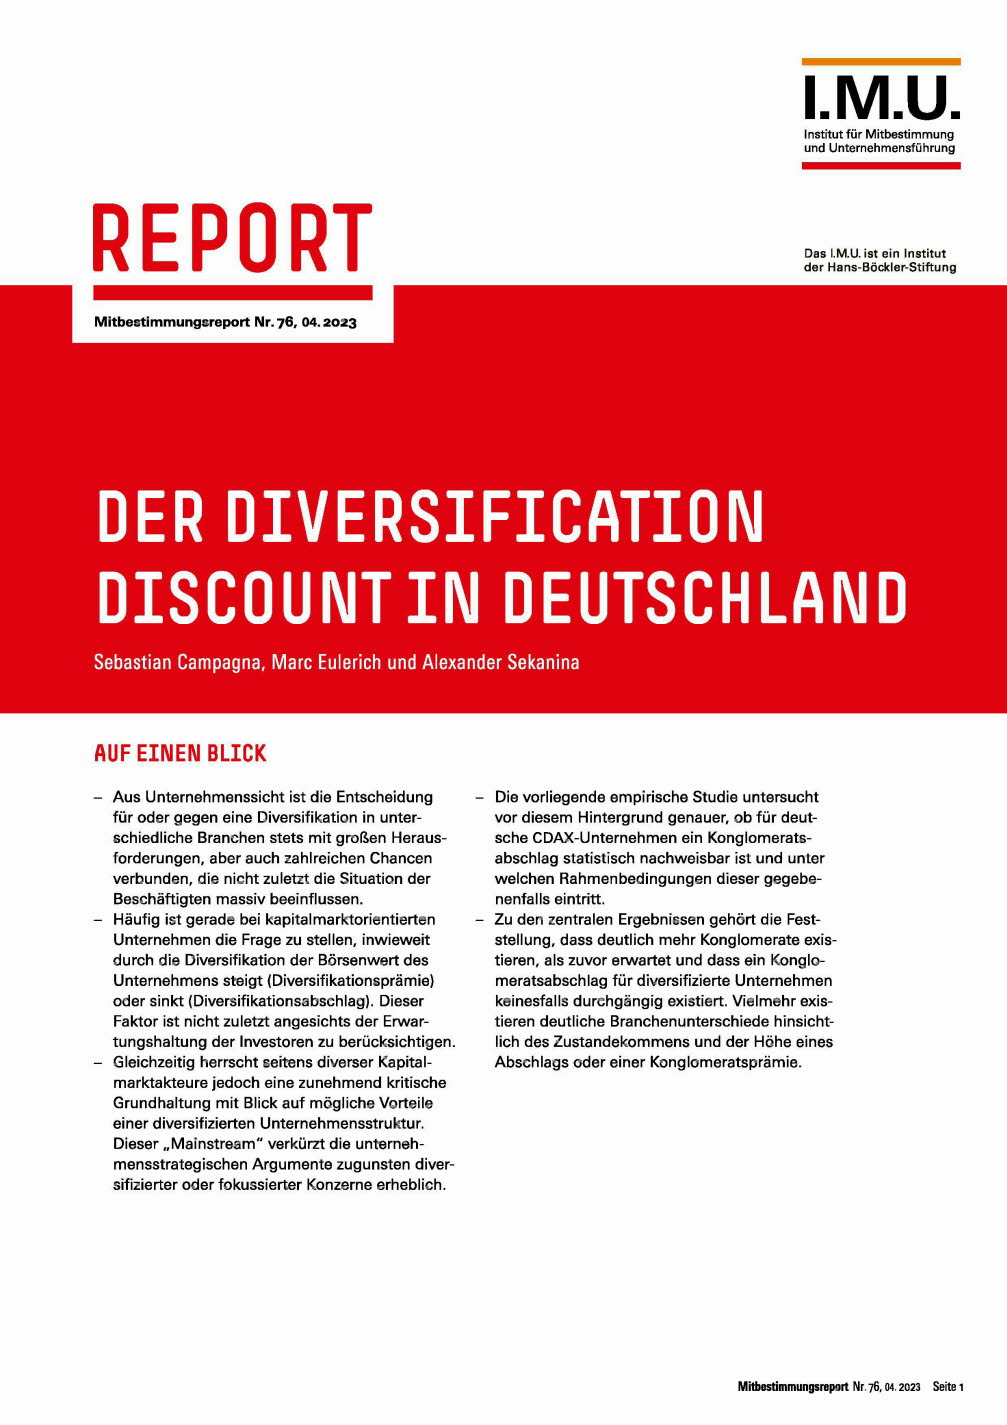 Der Diversification Discount in Deutschland